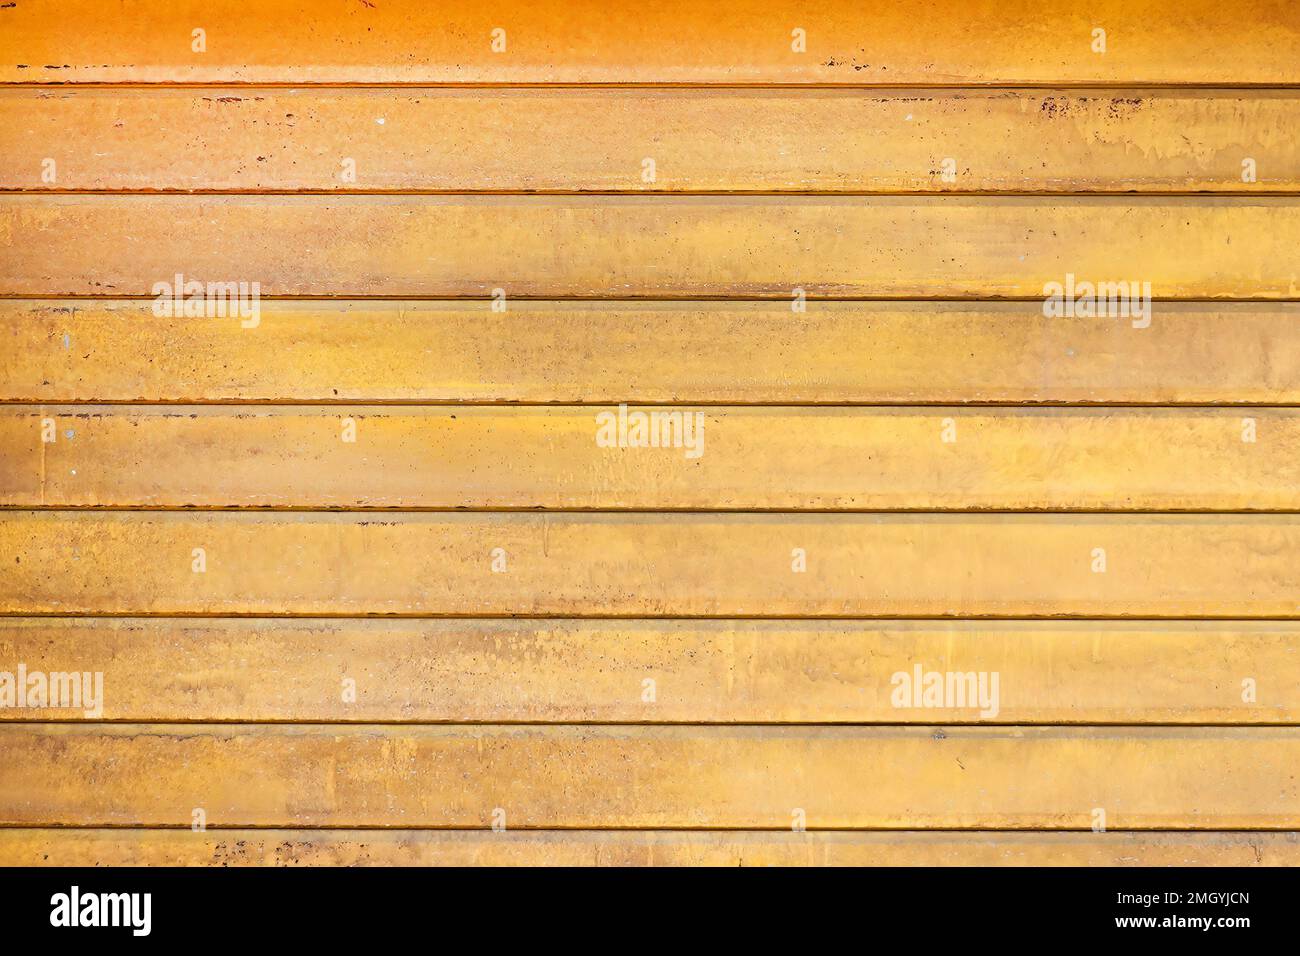 Ein einfaches Hintergrund- oder Tischbild. Das Foto zeigt eine gelbe, symmetrisch beschichtete Holztür oder Tischplatte Stockfoto